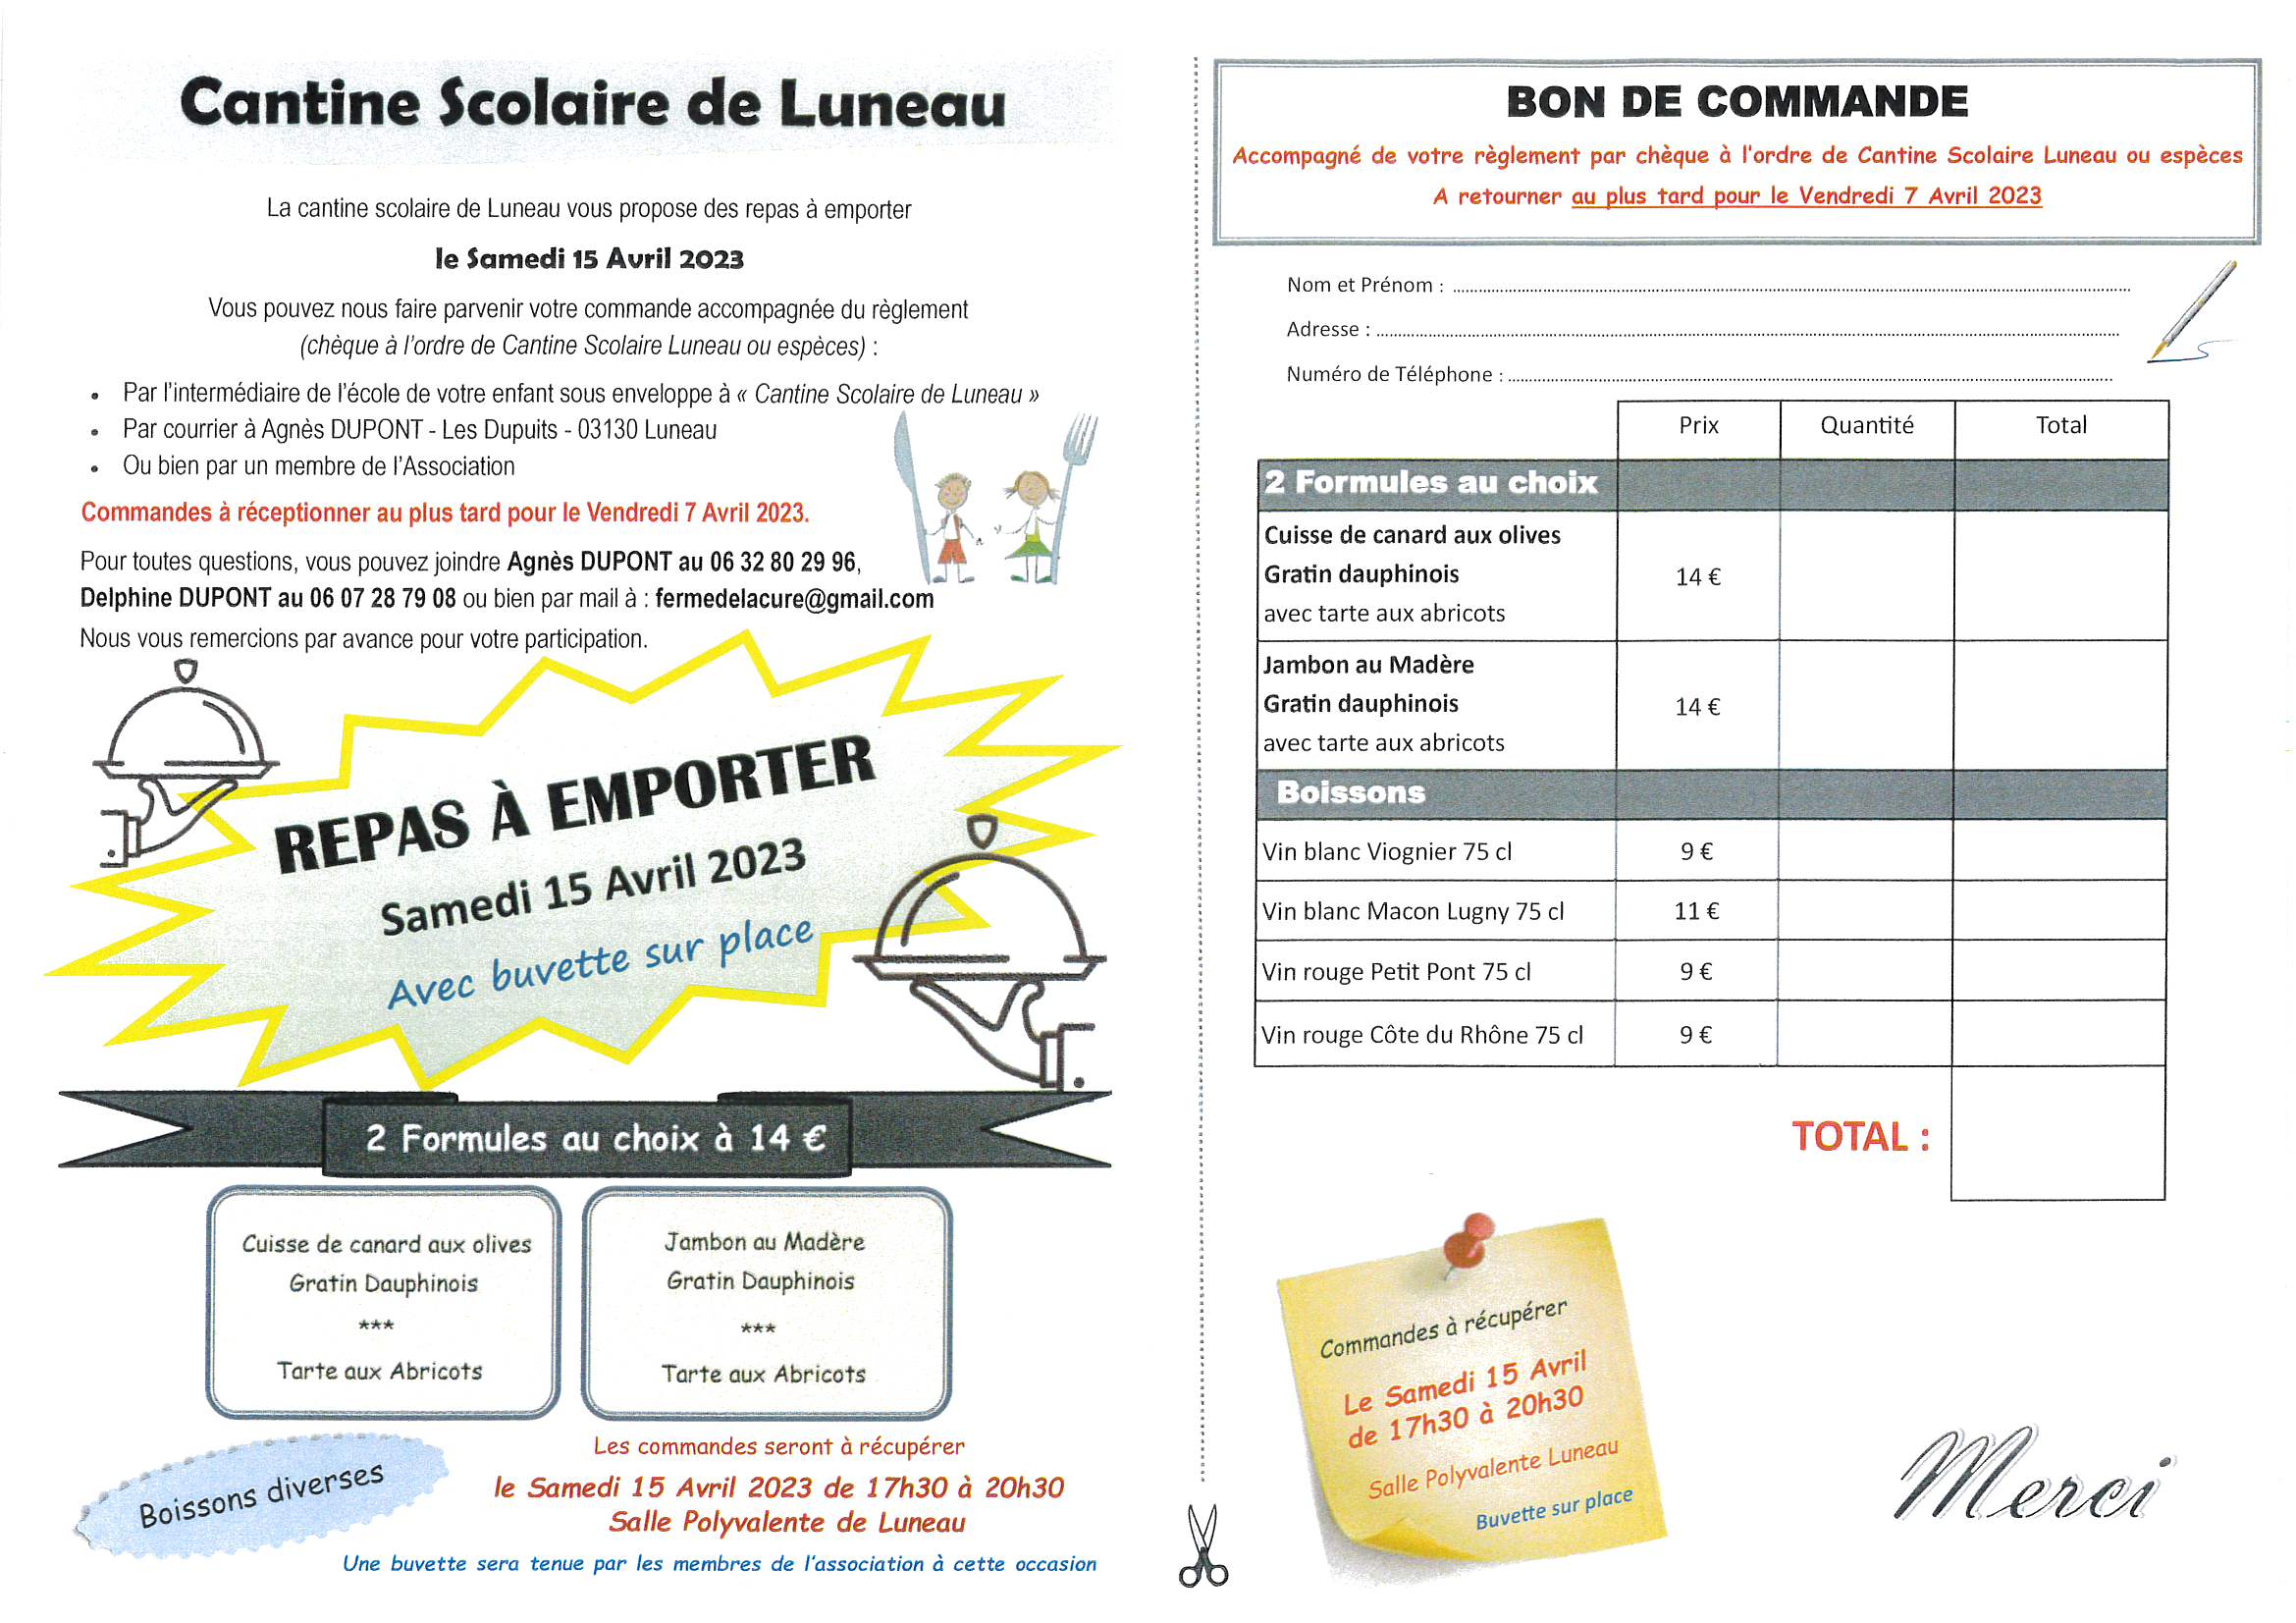 L'association 'Cantine scolaire de Luneau' organise une vente de repas à emporter SAMEDI 19 NOVEMBRE 2022 à la salle polyvalente